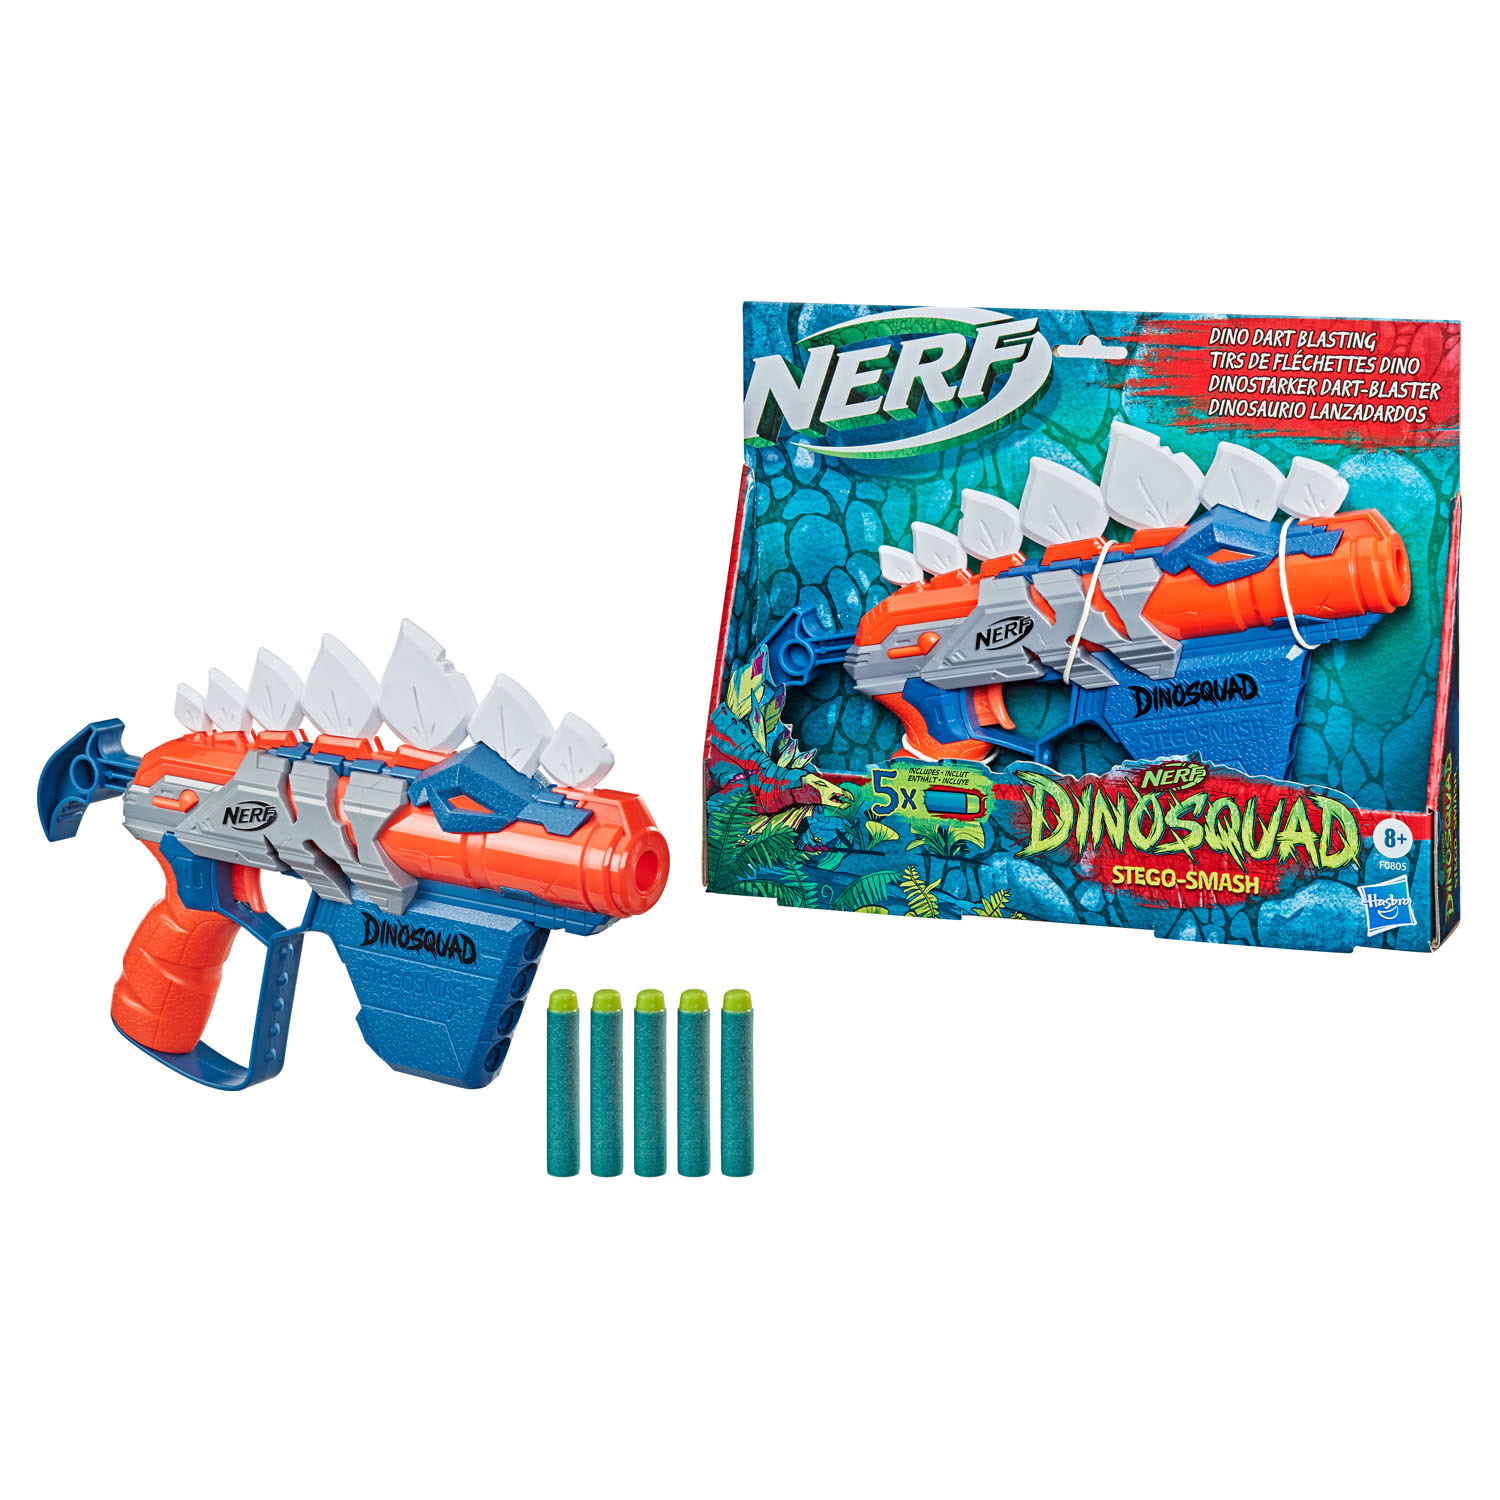 NERF Dino Squad Stegosmash